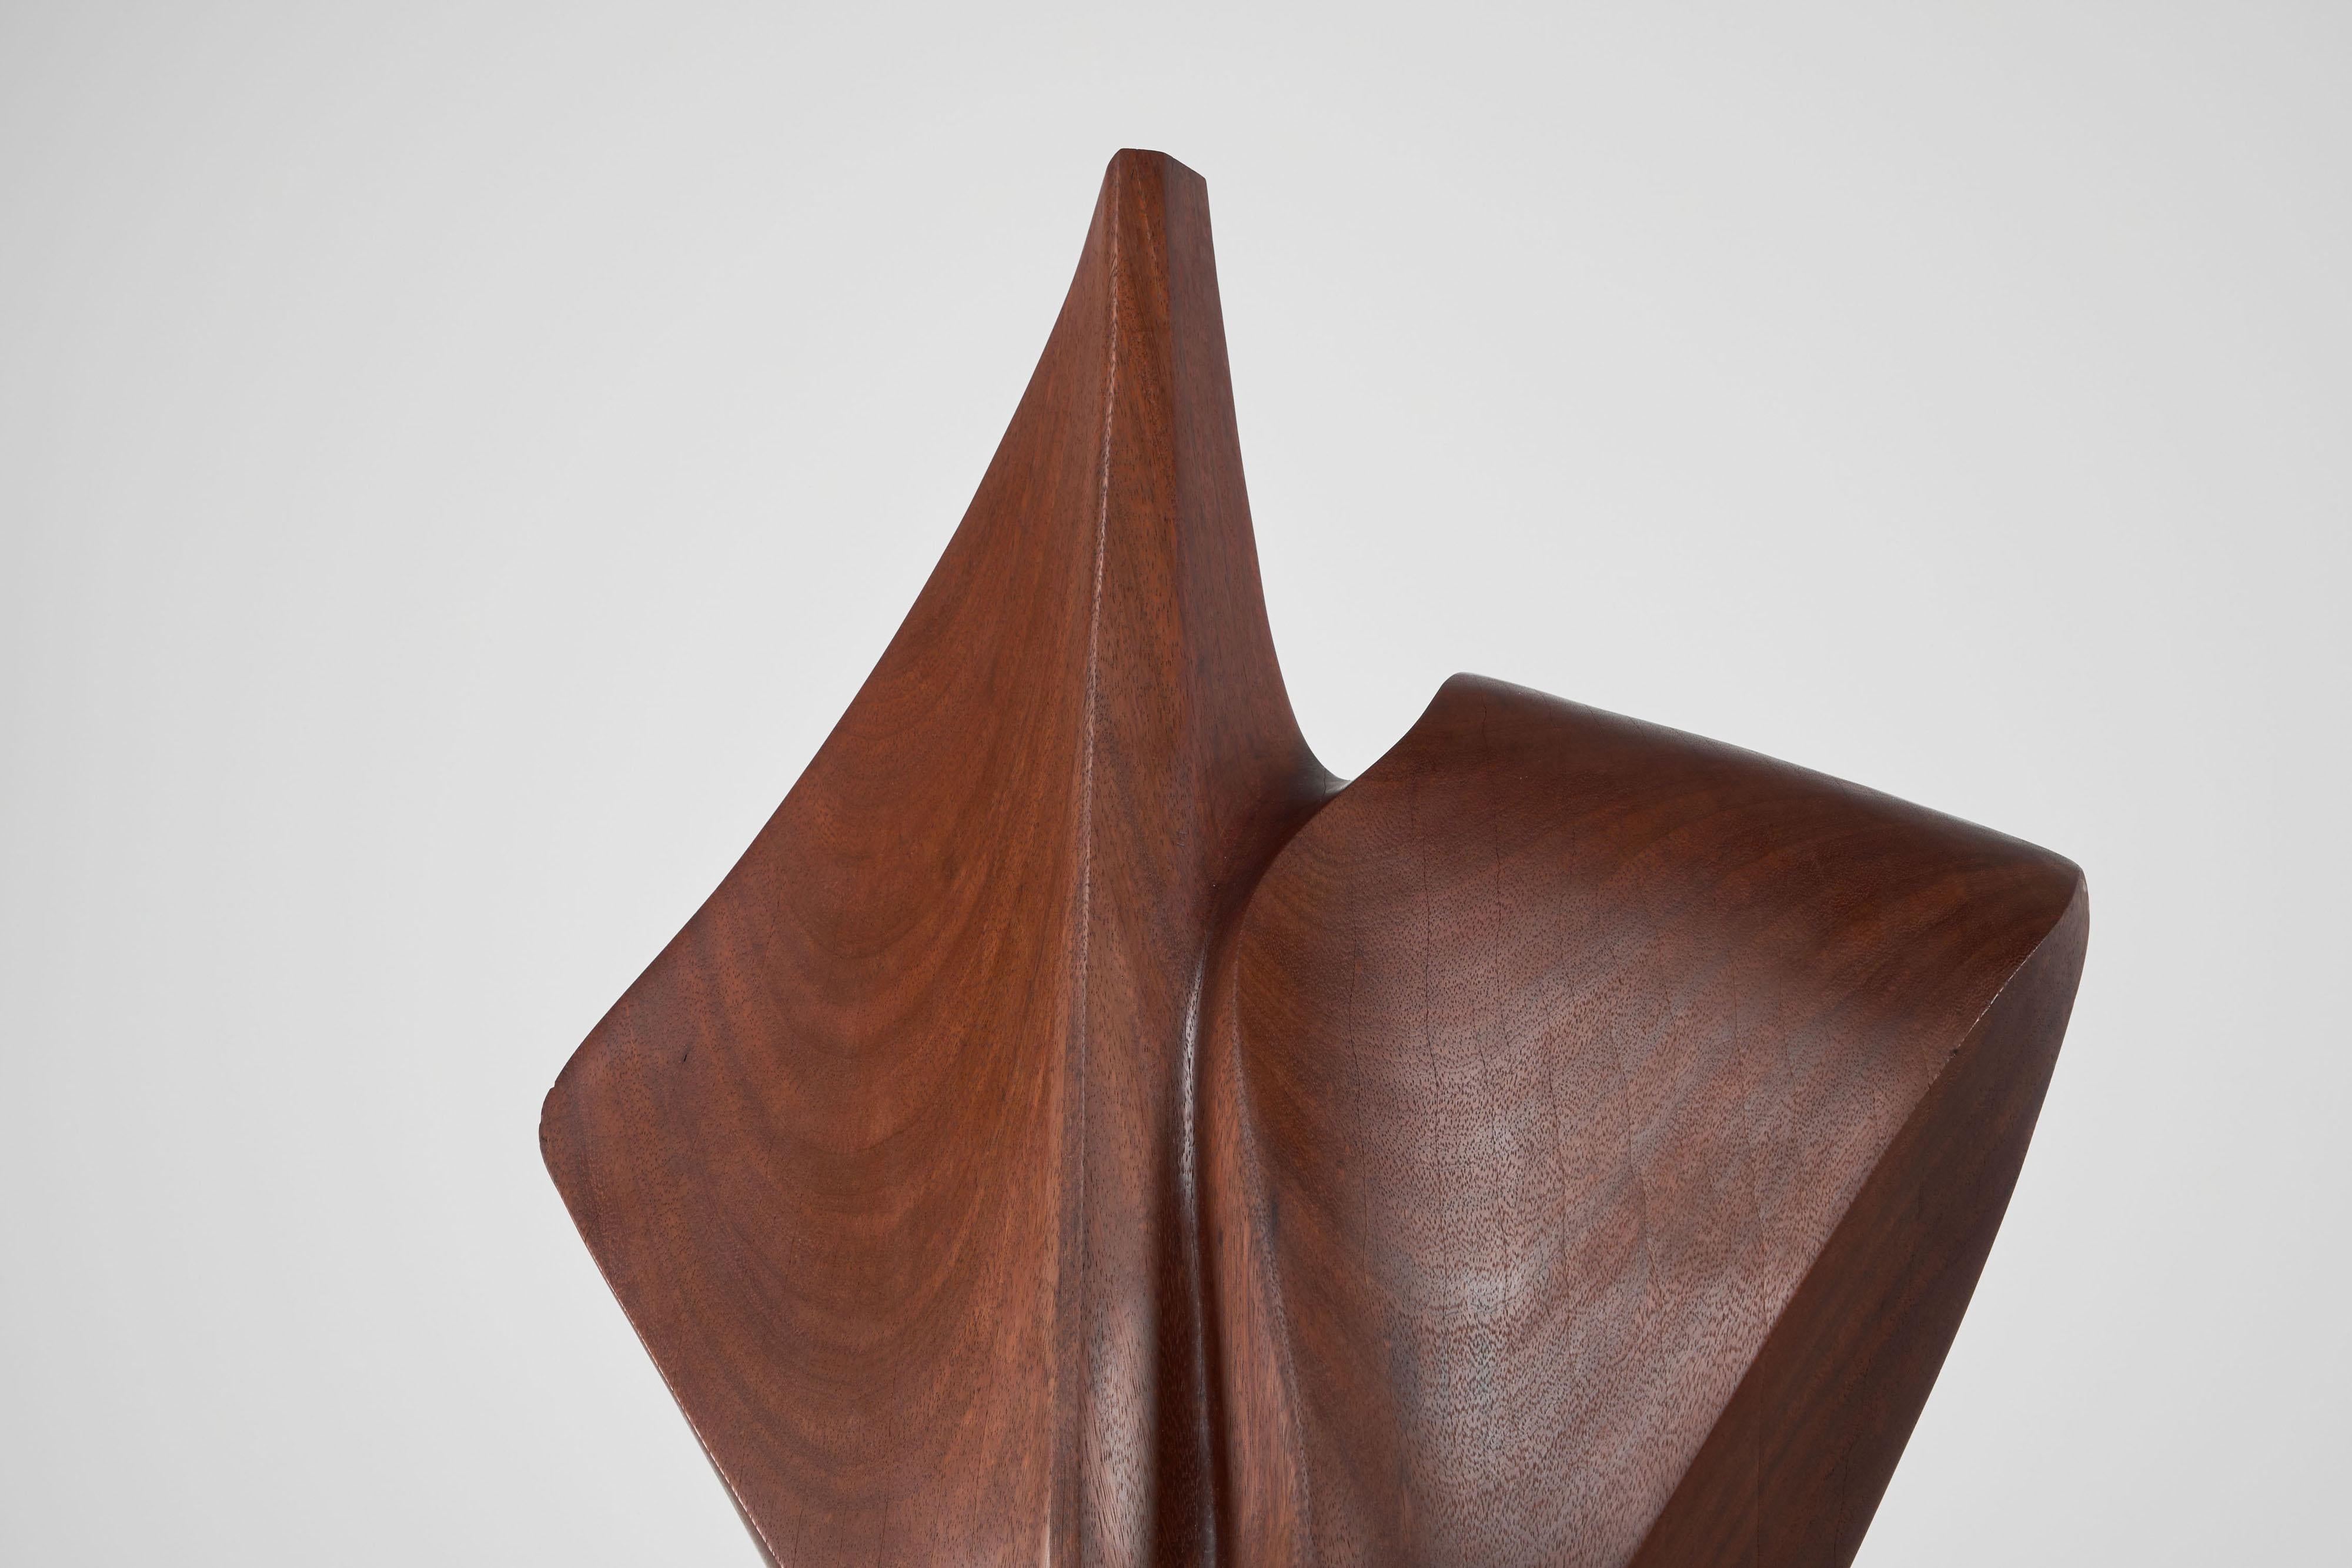 H Louis Noel abstract kambala sculpture Belgium 1989 For Sale 1